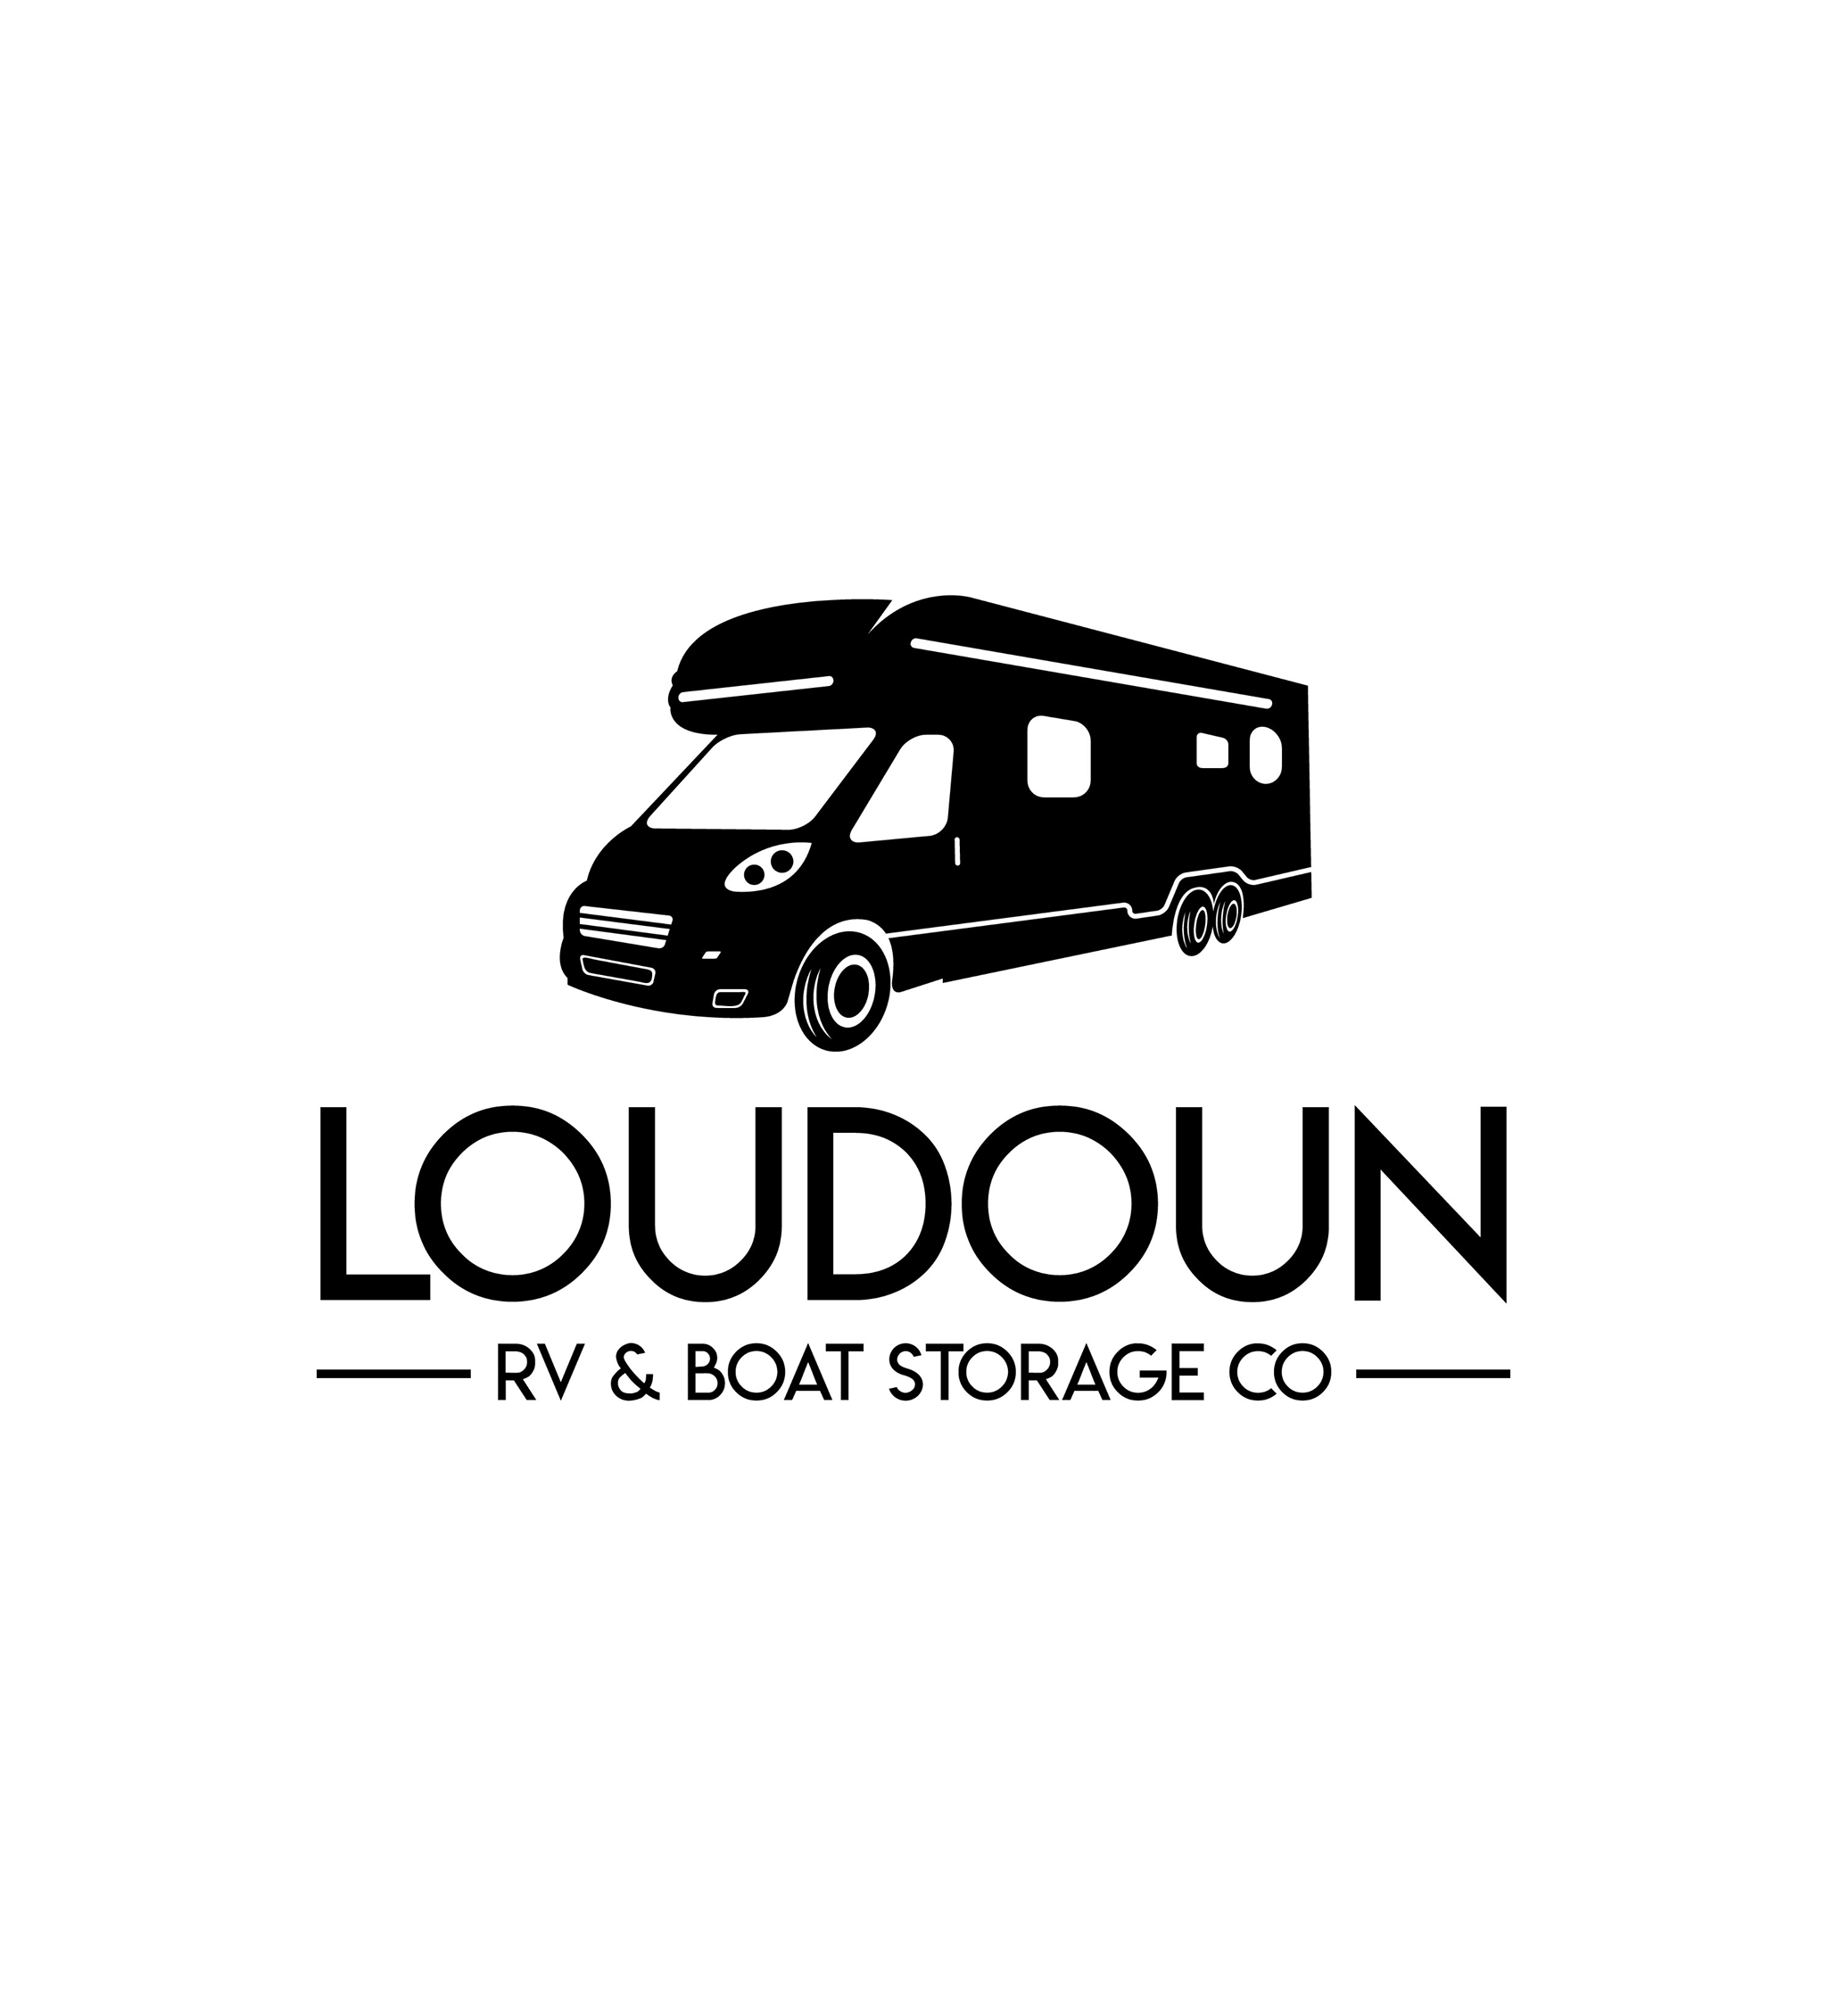 Loudoun RV & Boat Storage Co.